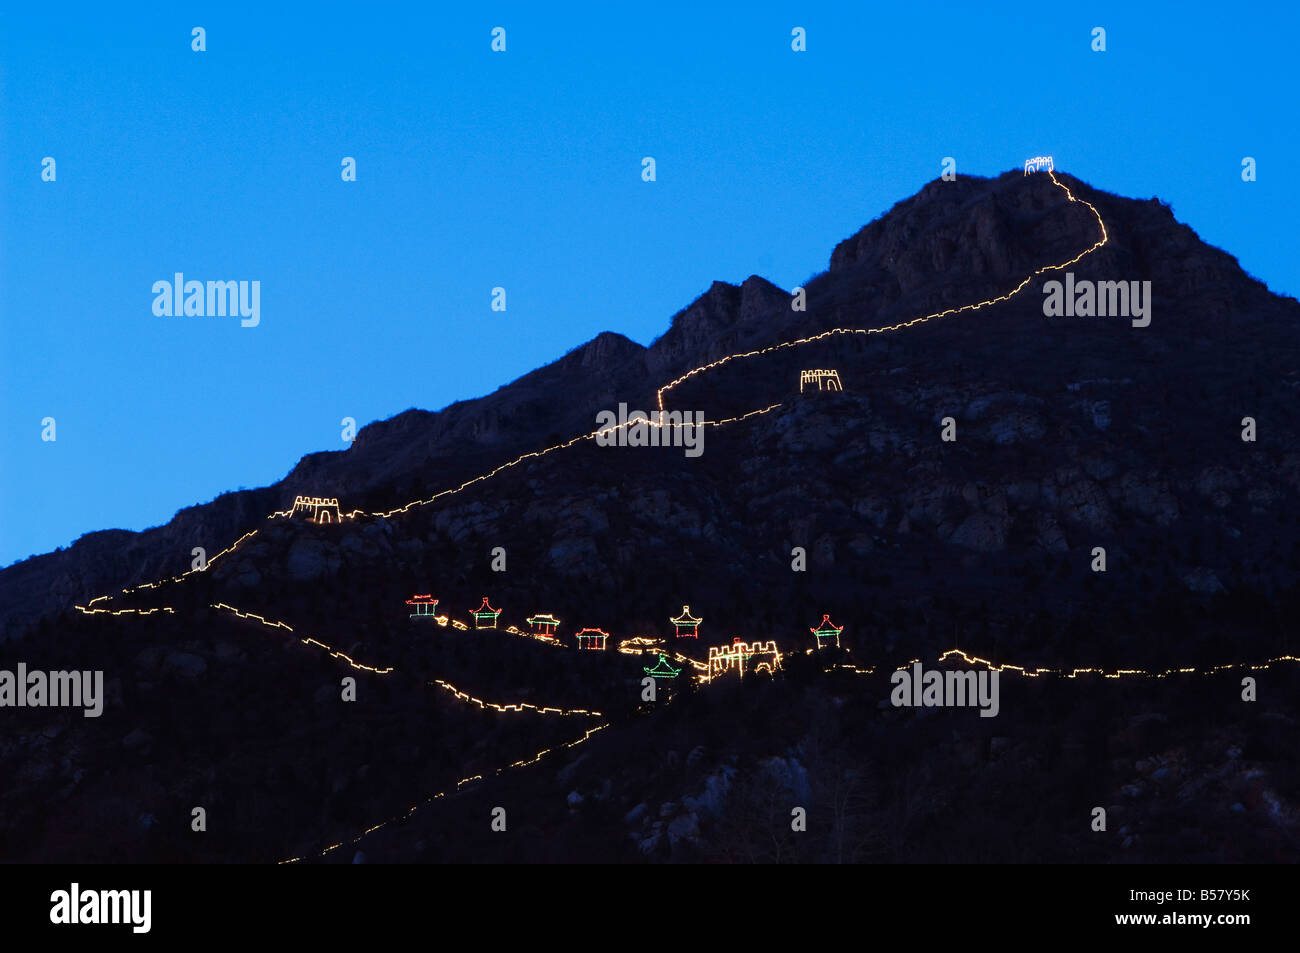 Visualización de noche iluminaciones y copia de la Gran Muralla de China en la garganta de Longqing festival de esculturas de hielo, Beijing, China Foto de stock